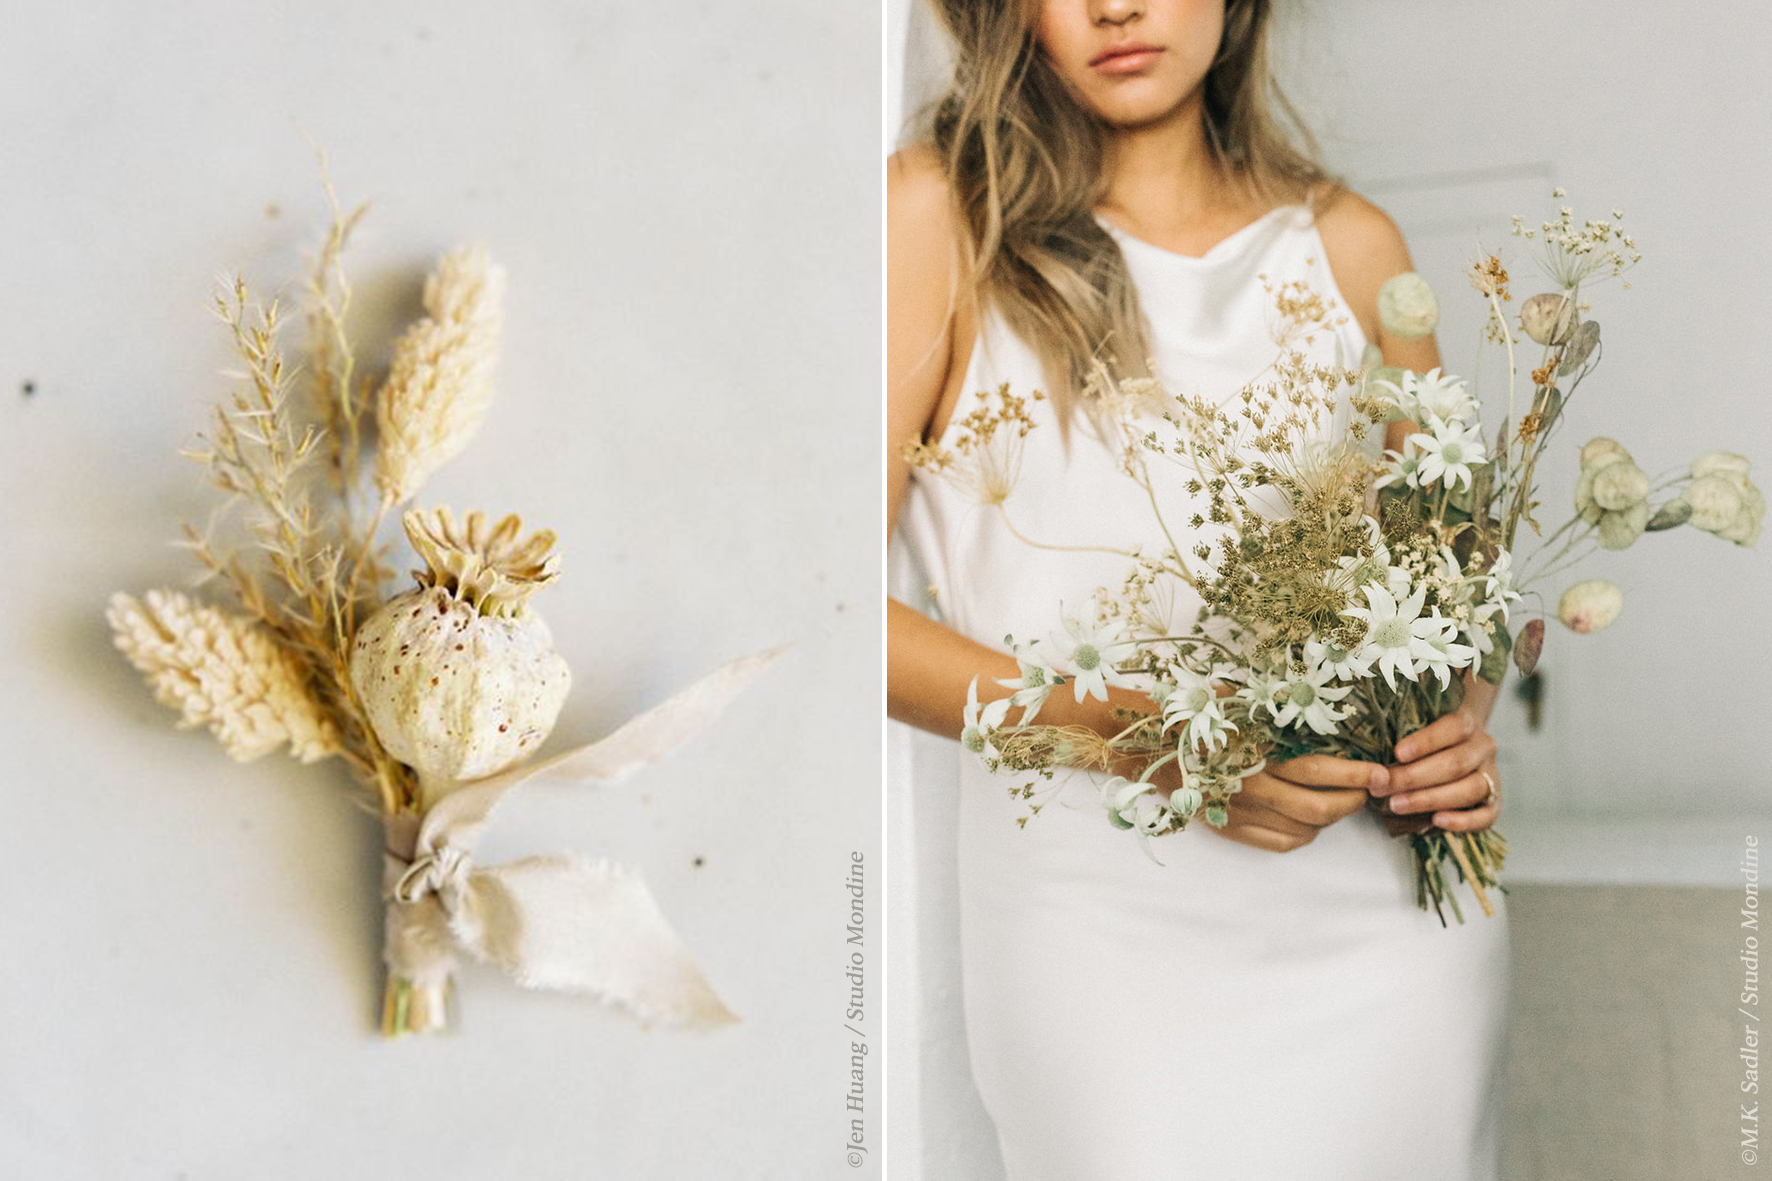 Incorporer des fleurs séchées dans la décoration de votre mariage - Blog  mariage La mariée aux pieds nus - la mariee aux pieds nus